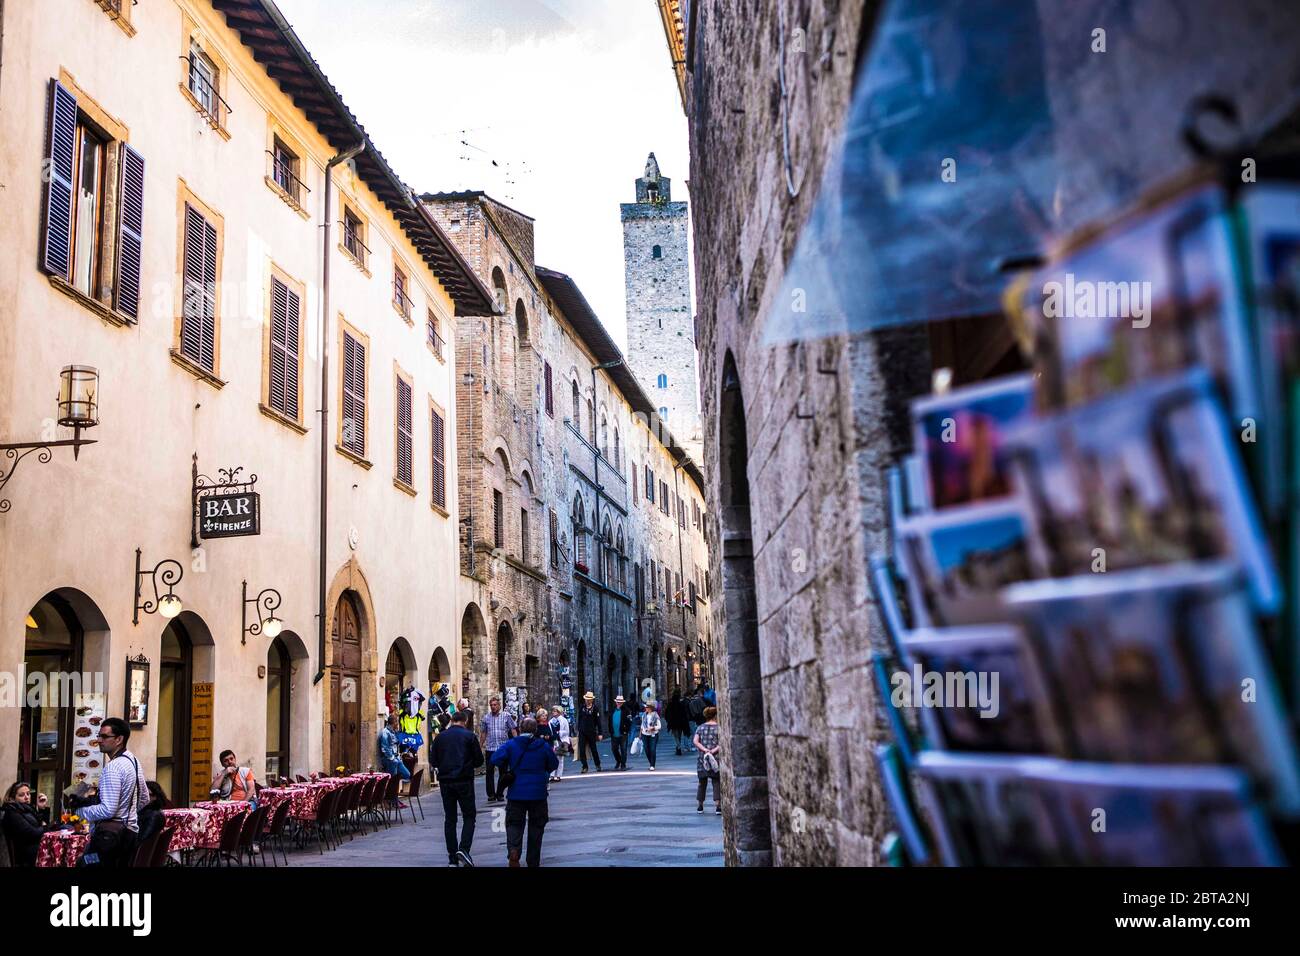 San Gimignano ist eine der bekanntesten mittelalterlichen Städte Italiens. Die Kleinstadt hat fast 8000 Einwohner und ist bekannt durch seine Geschlec Stock Photo